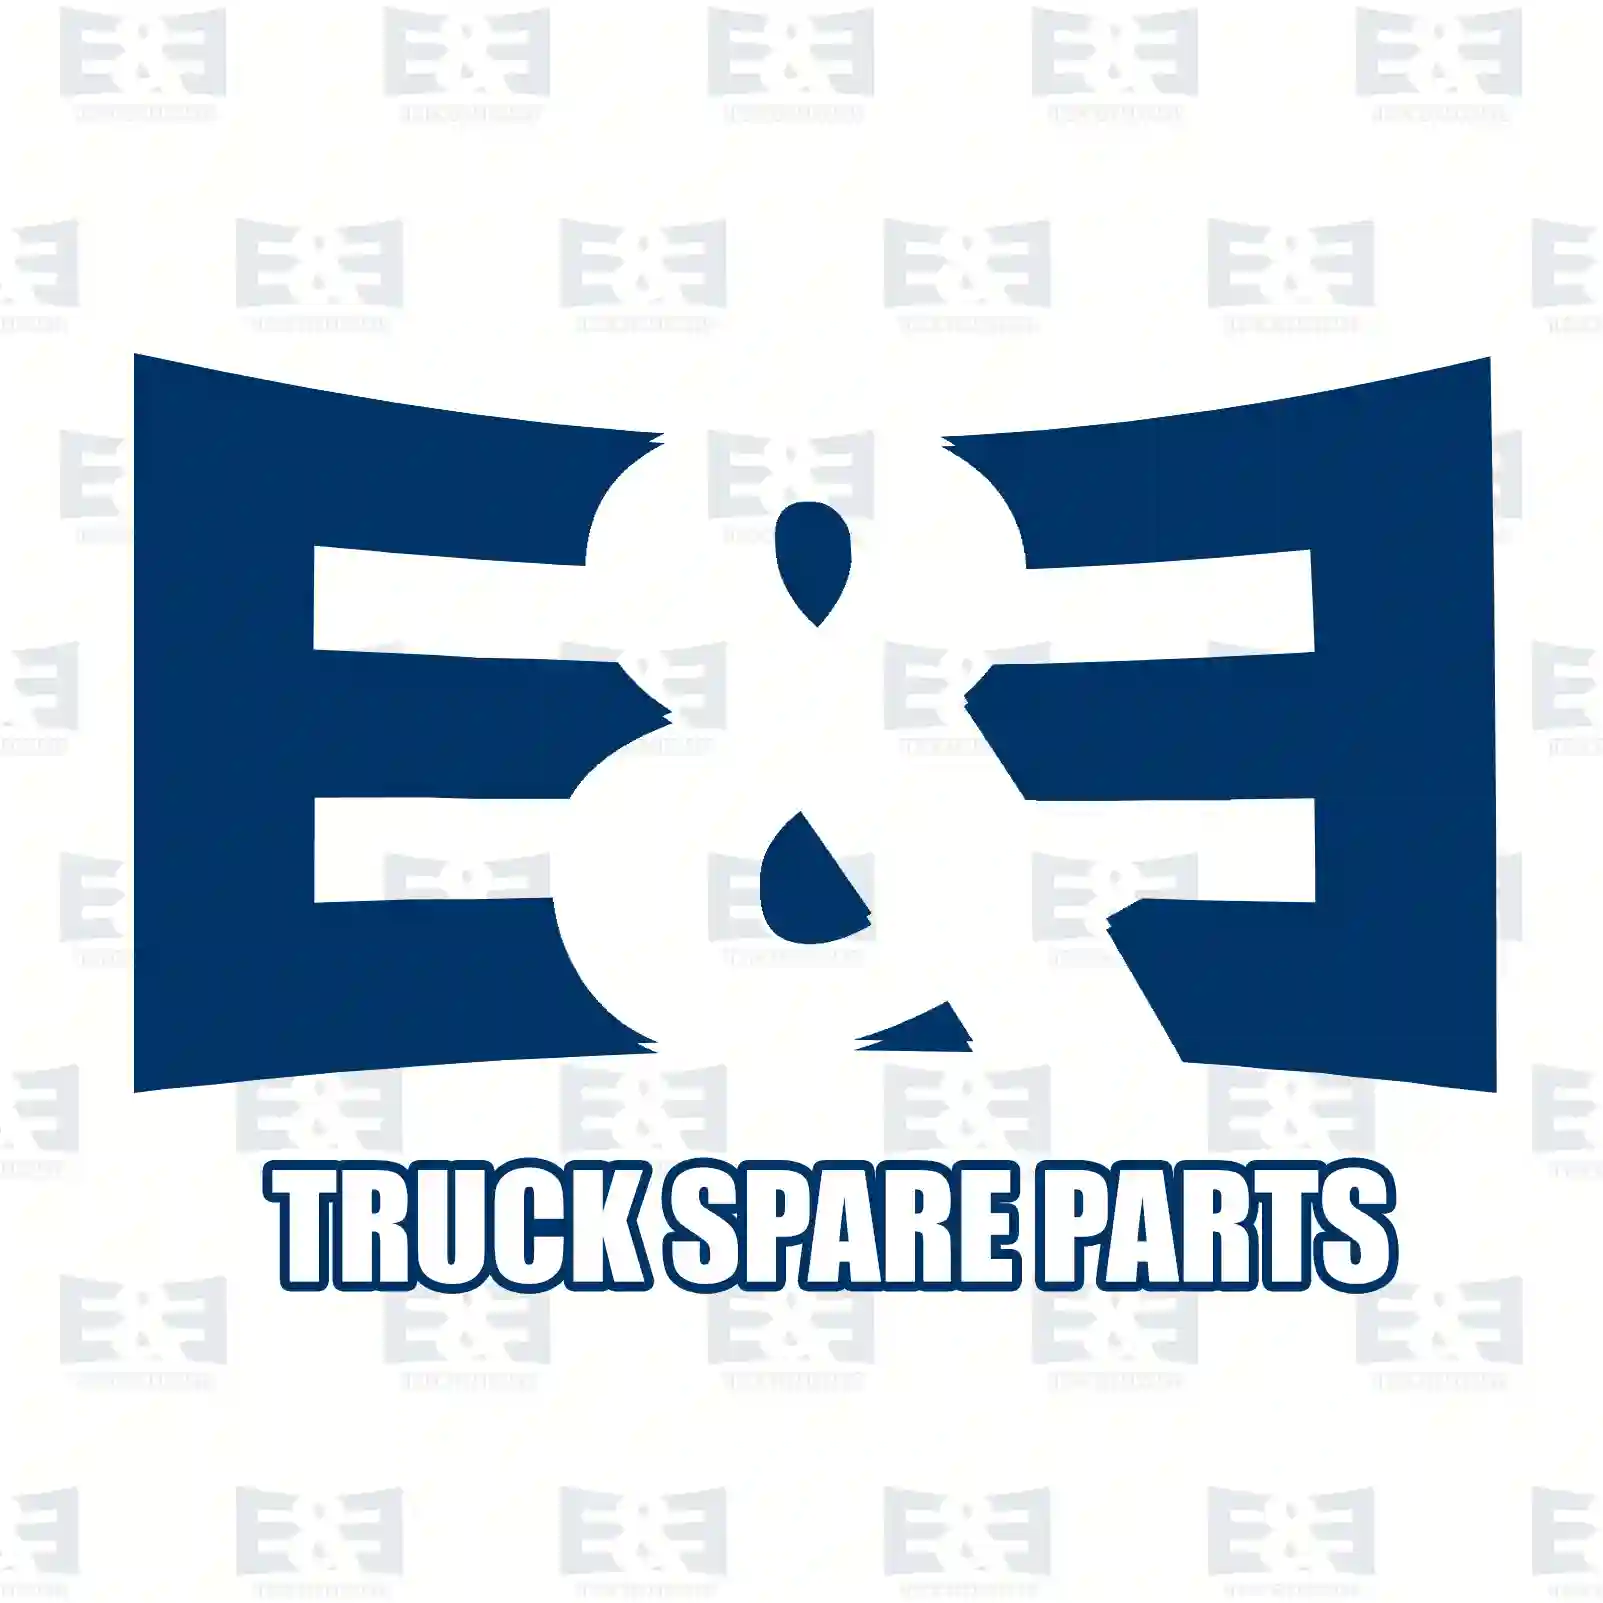 Thermostat, with gaskets, 2E2202186, 5010295225S, 5010295225S ||  2E2202186 E&E Truck Spare Parts | Truck Spare Parts, Auotomotive Spare Parts Thermostat, with gaskets, 2E2202186, 5010295225S, 5010295225S ||  2E2202186 E&E Truck Spare Parts | Truck Spare Parts, Auotomotive Spare Parts